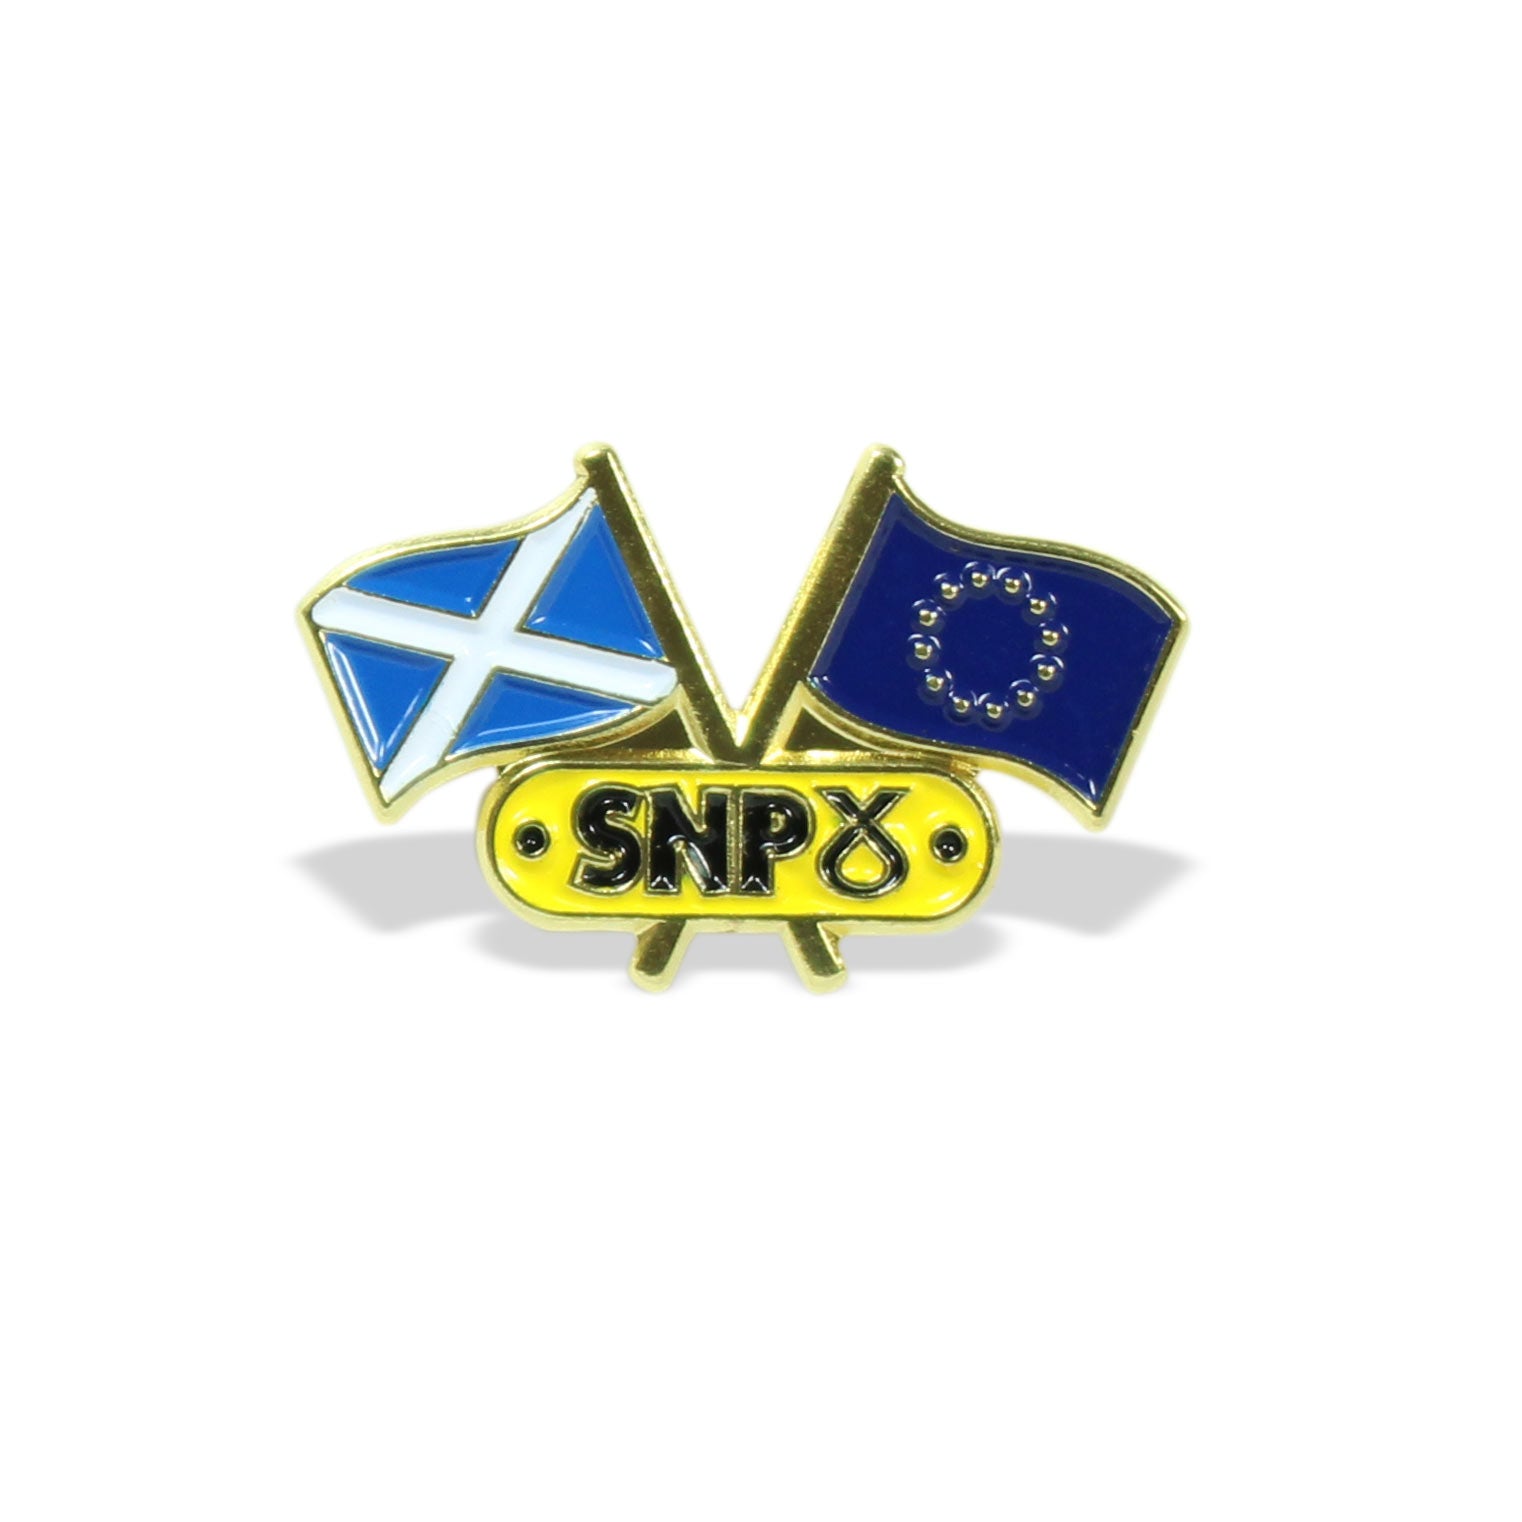 SNP Scotland & EU Flags Pin Badge